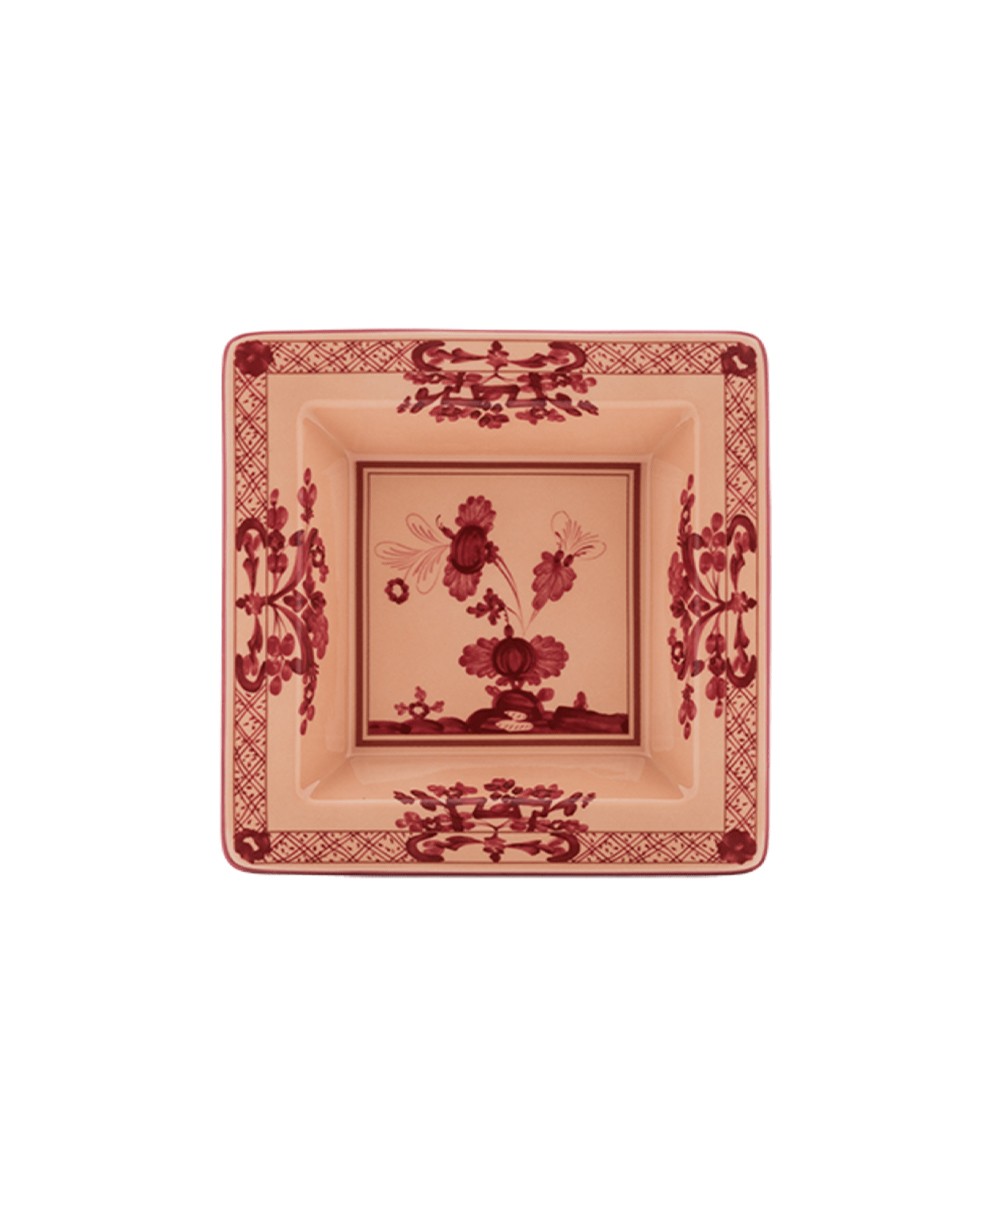 Produktbild "Oriente Vermiglio Platte" von Ginori 1735 im RAUM Concept store